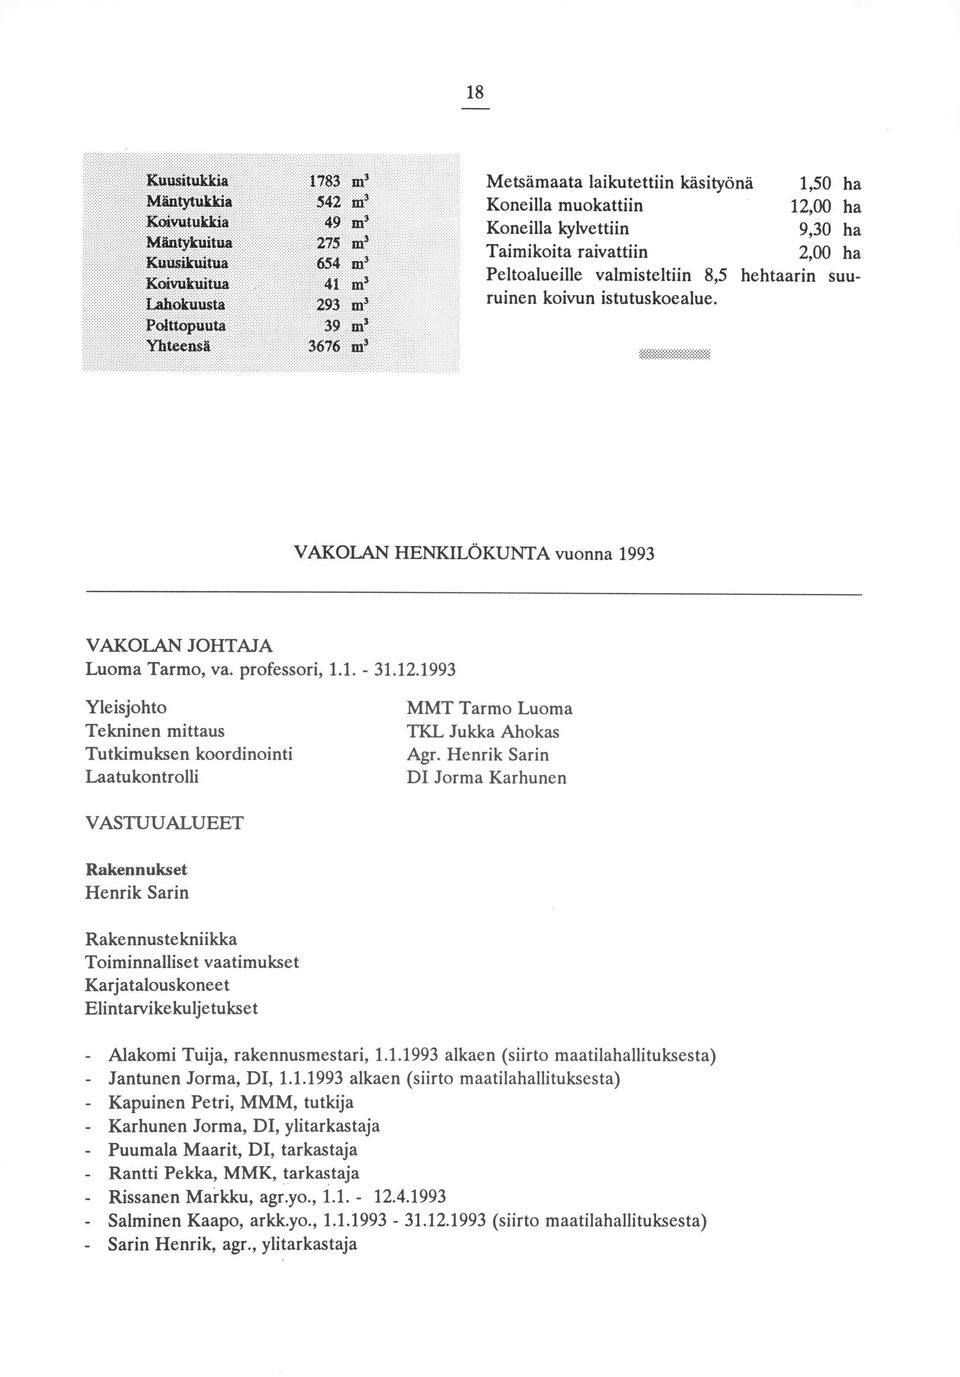 1993 Yleisjohto Tekninen mittaus Tutkimuksen koordinointi Laatukontrolli MMT Tarmo Luoma TKL Jukka Ahokas Agr.